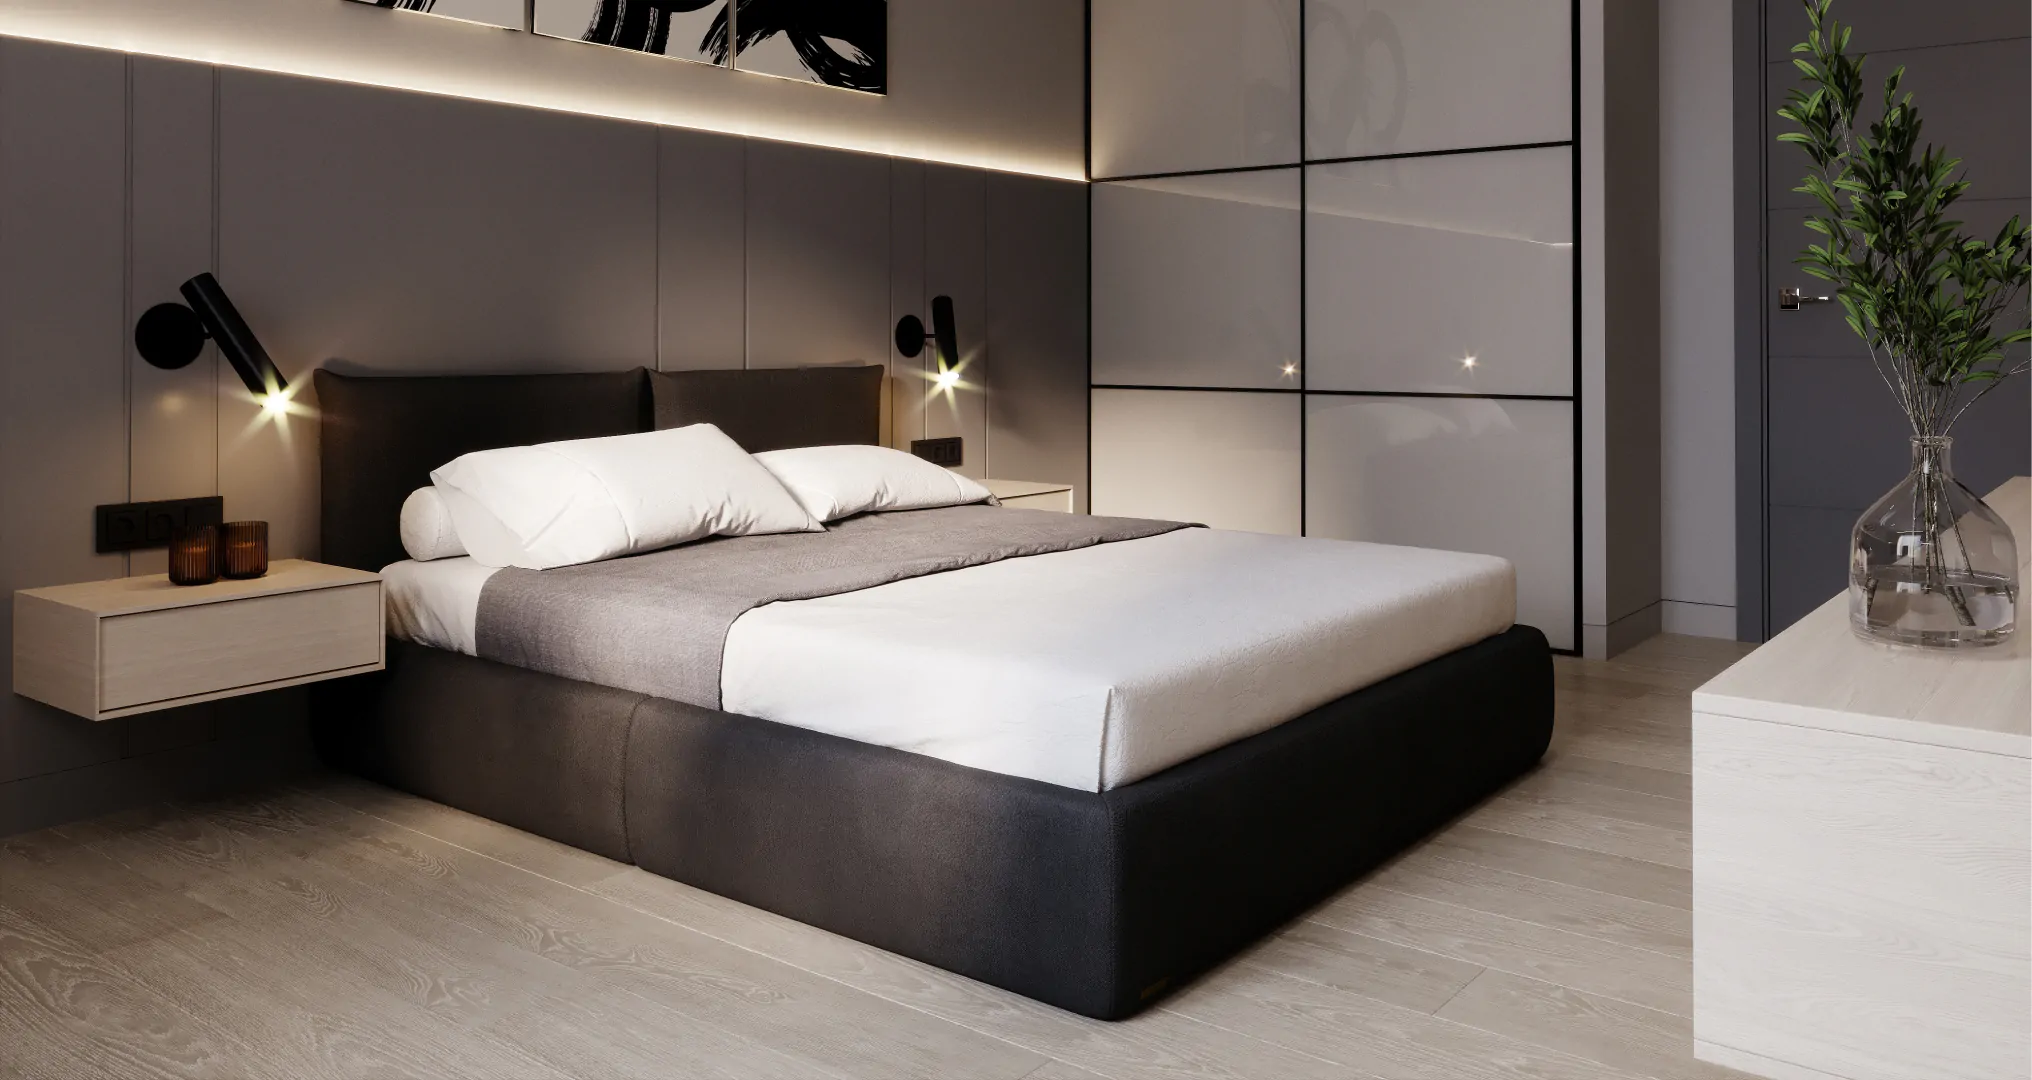 Как оформить спальню в стиле минимализм